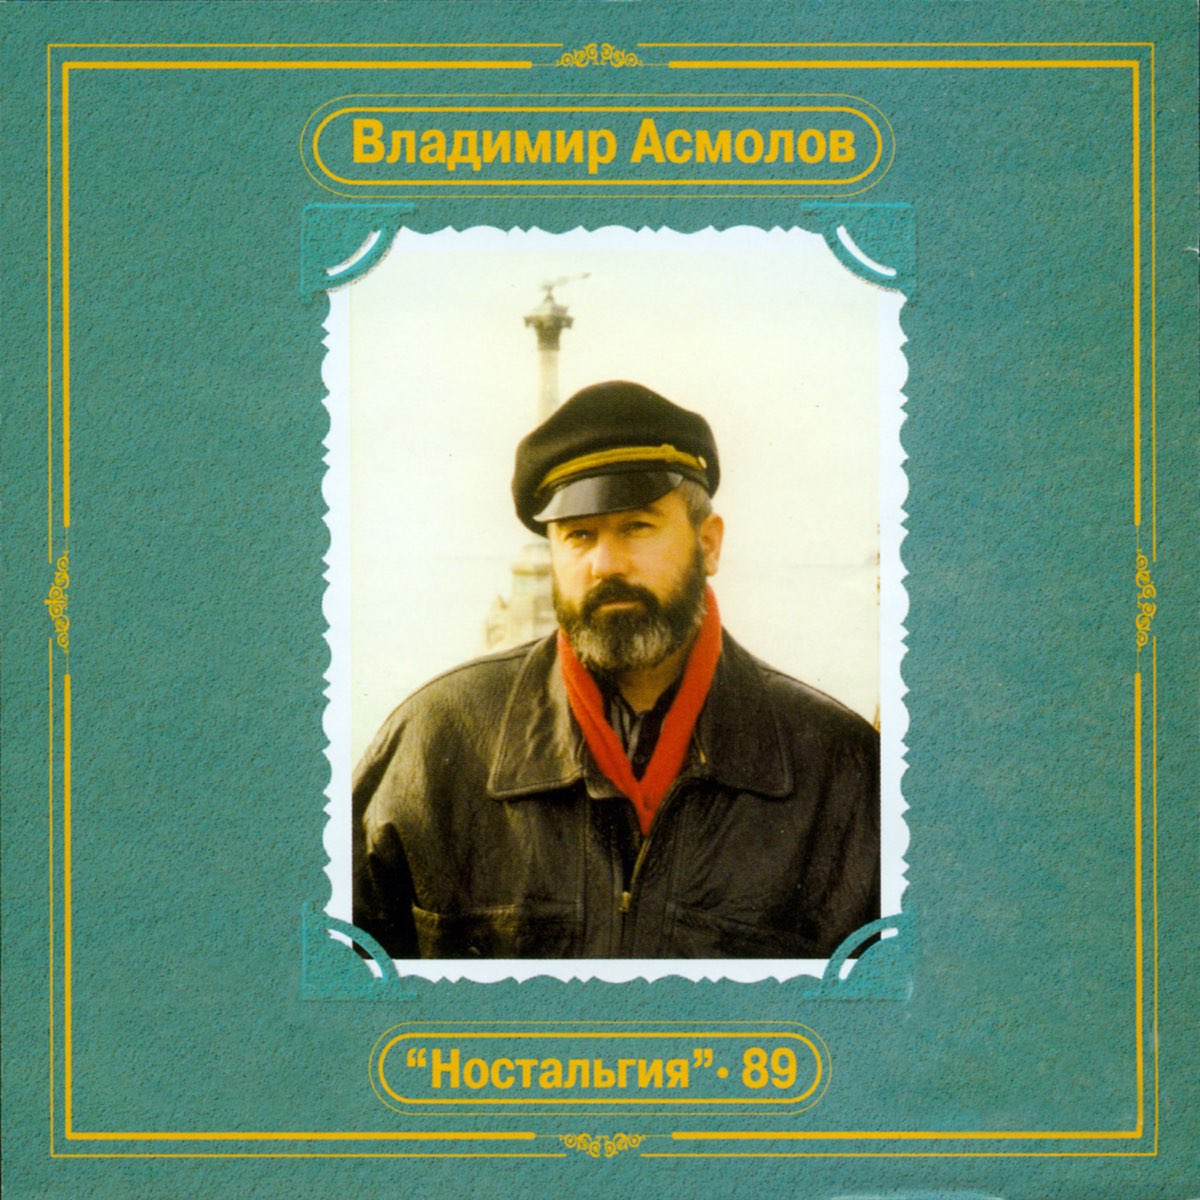 Владимир Асмолов ностальгия 1989